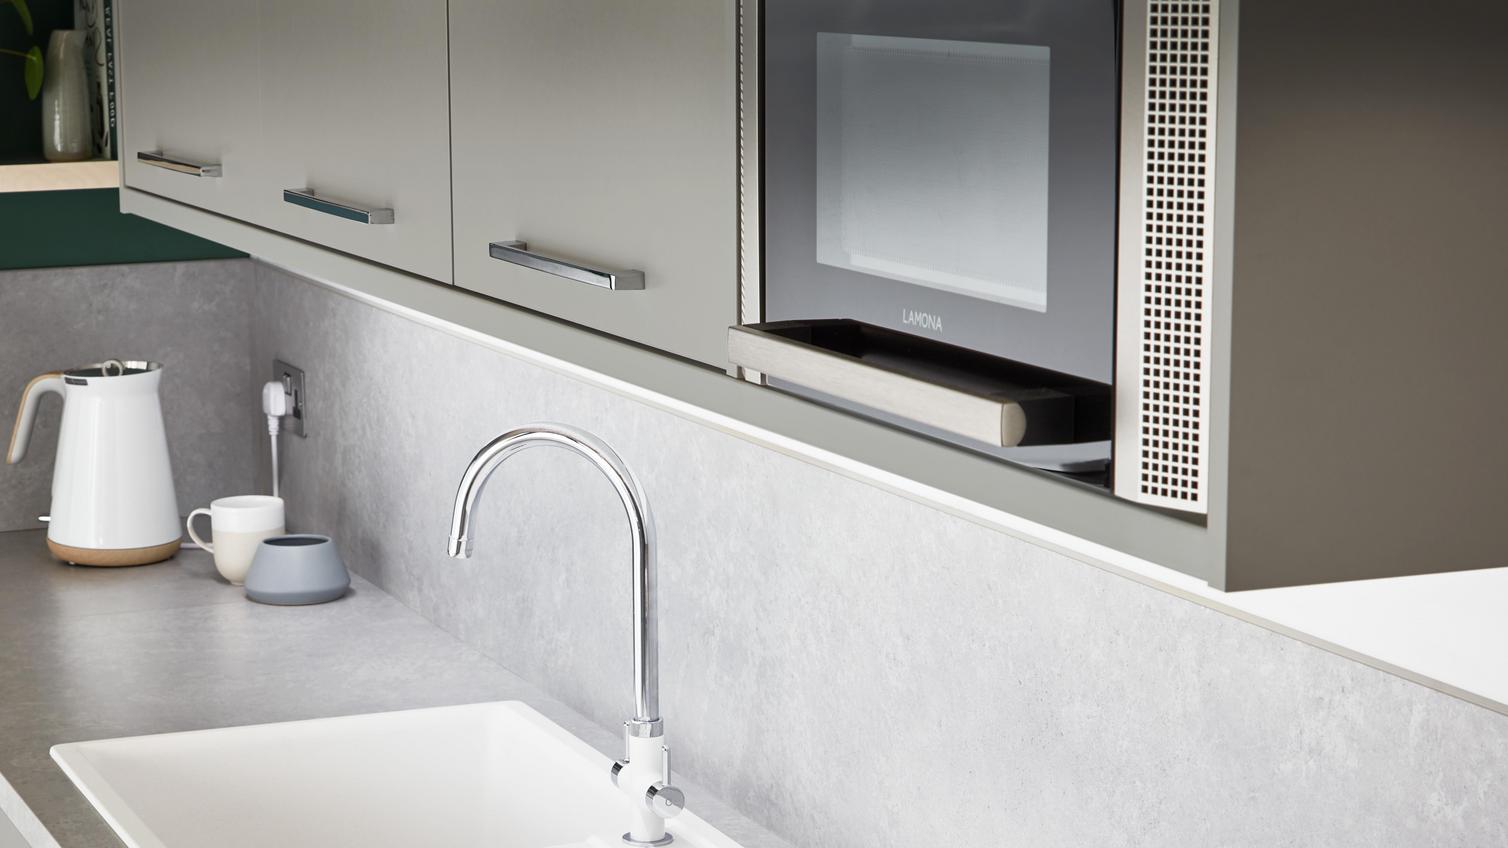 Lamona white granite composite sink and Calaggio monobloc tap